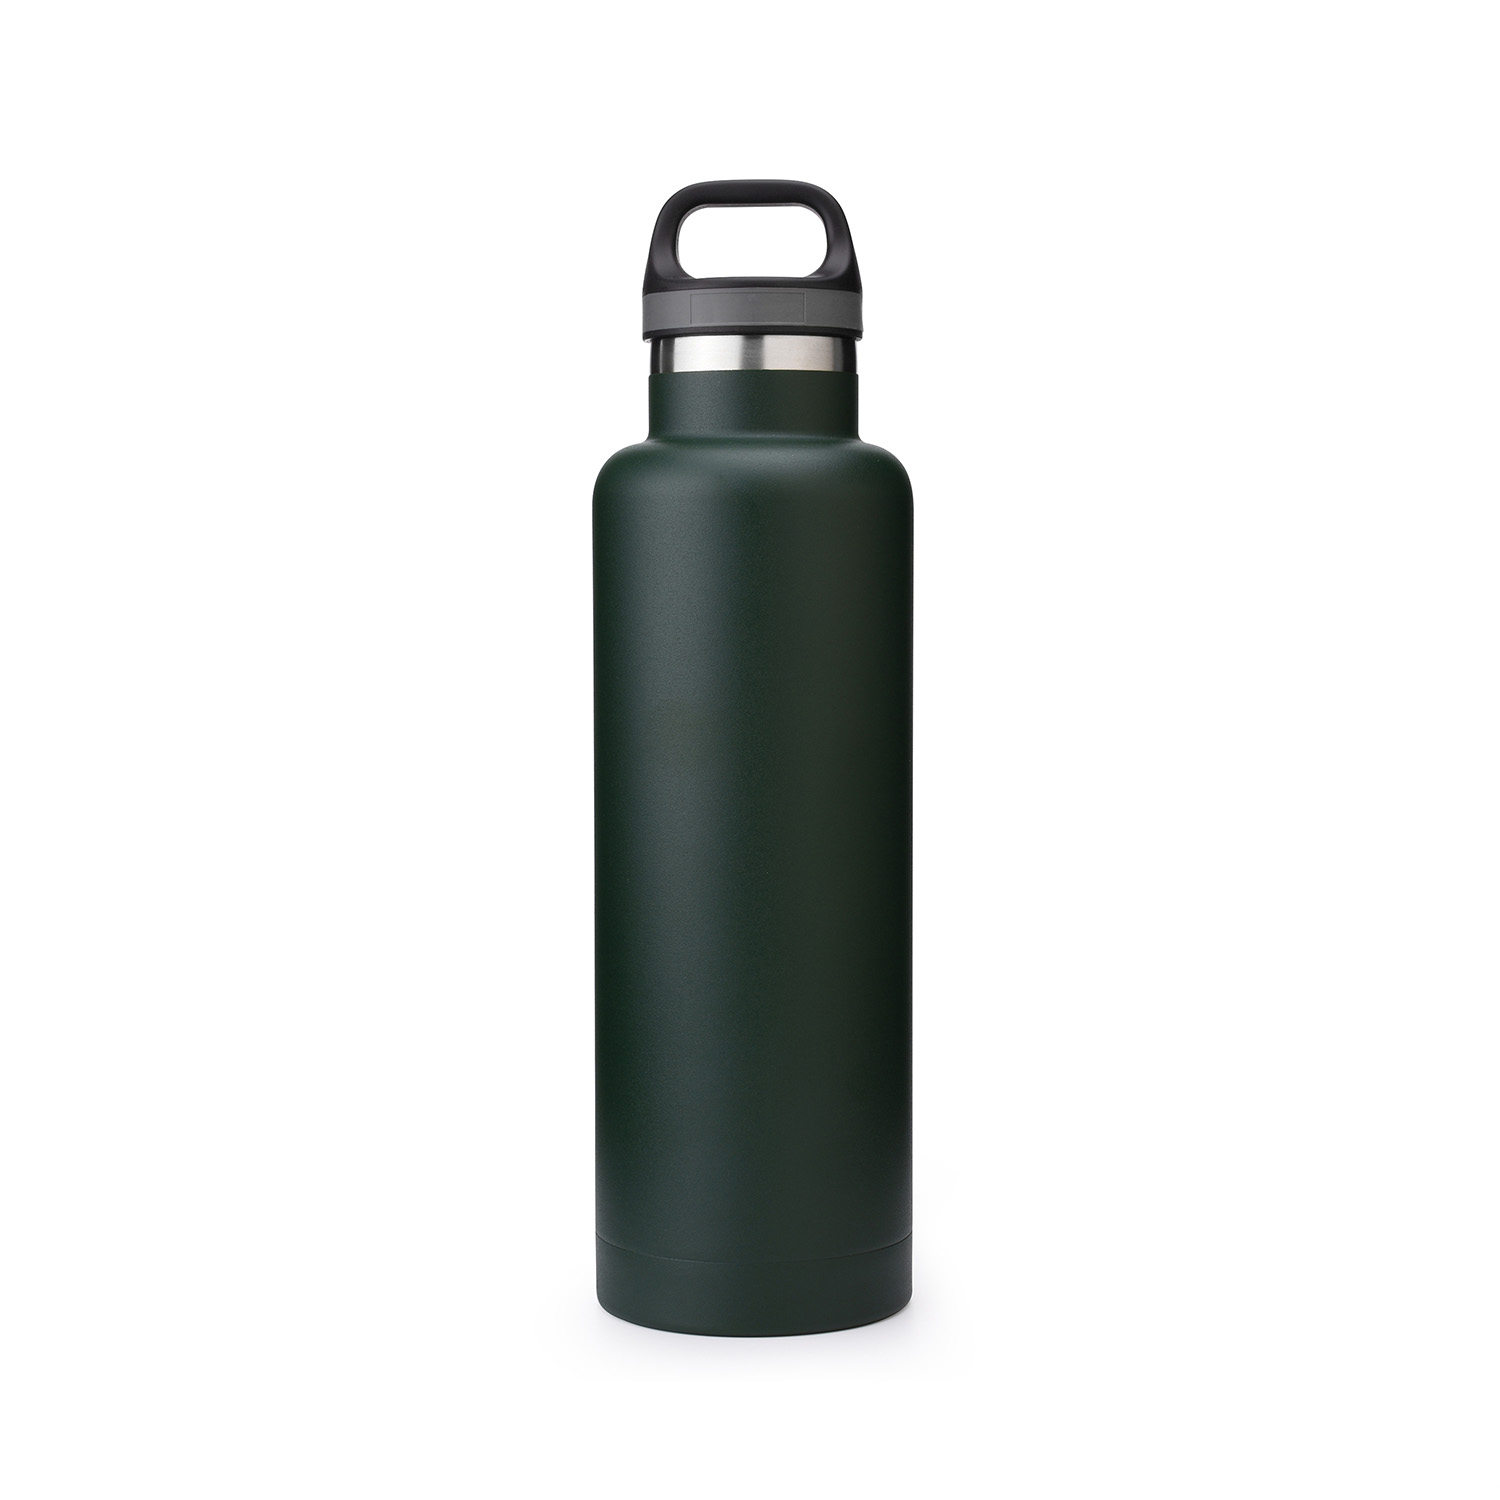 https://www.waterbottle.tech/wp-content/uploads/2019/07/stainless-steel-drink-bottle-rambler-s1140f3-1.jpg